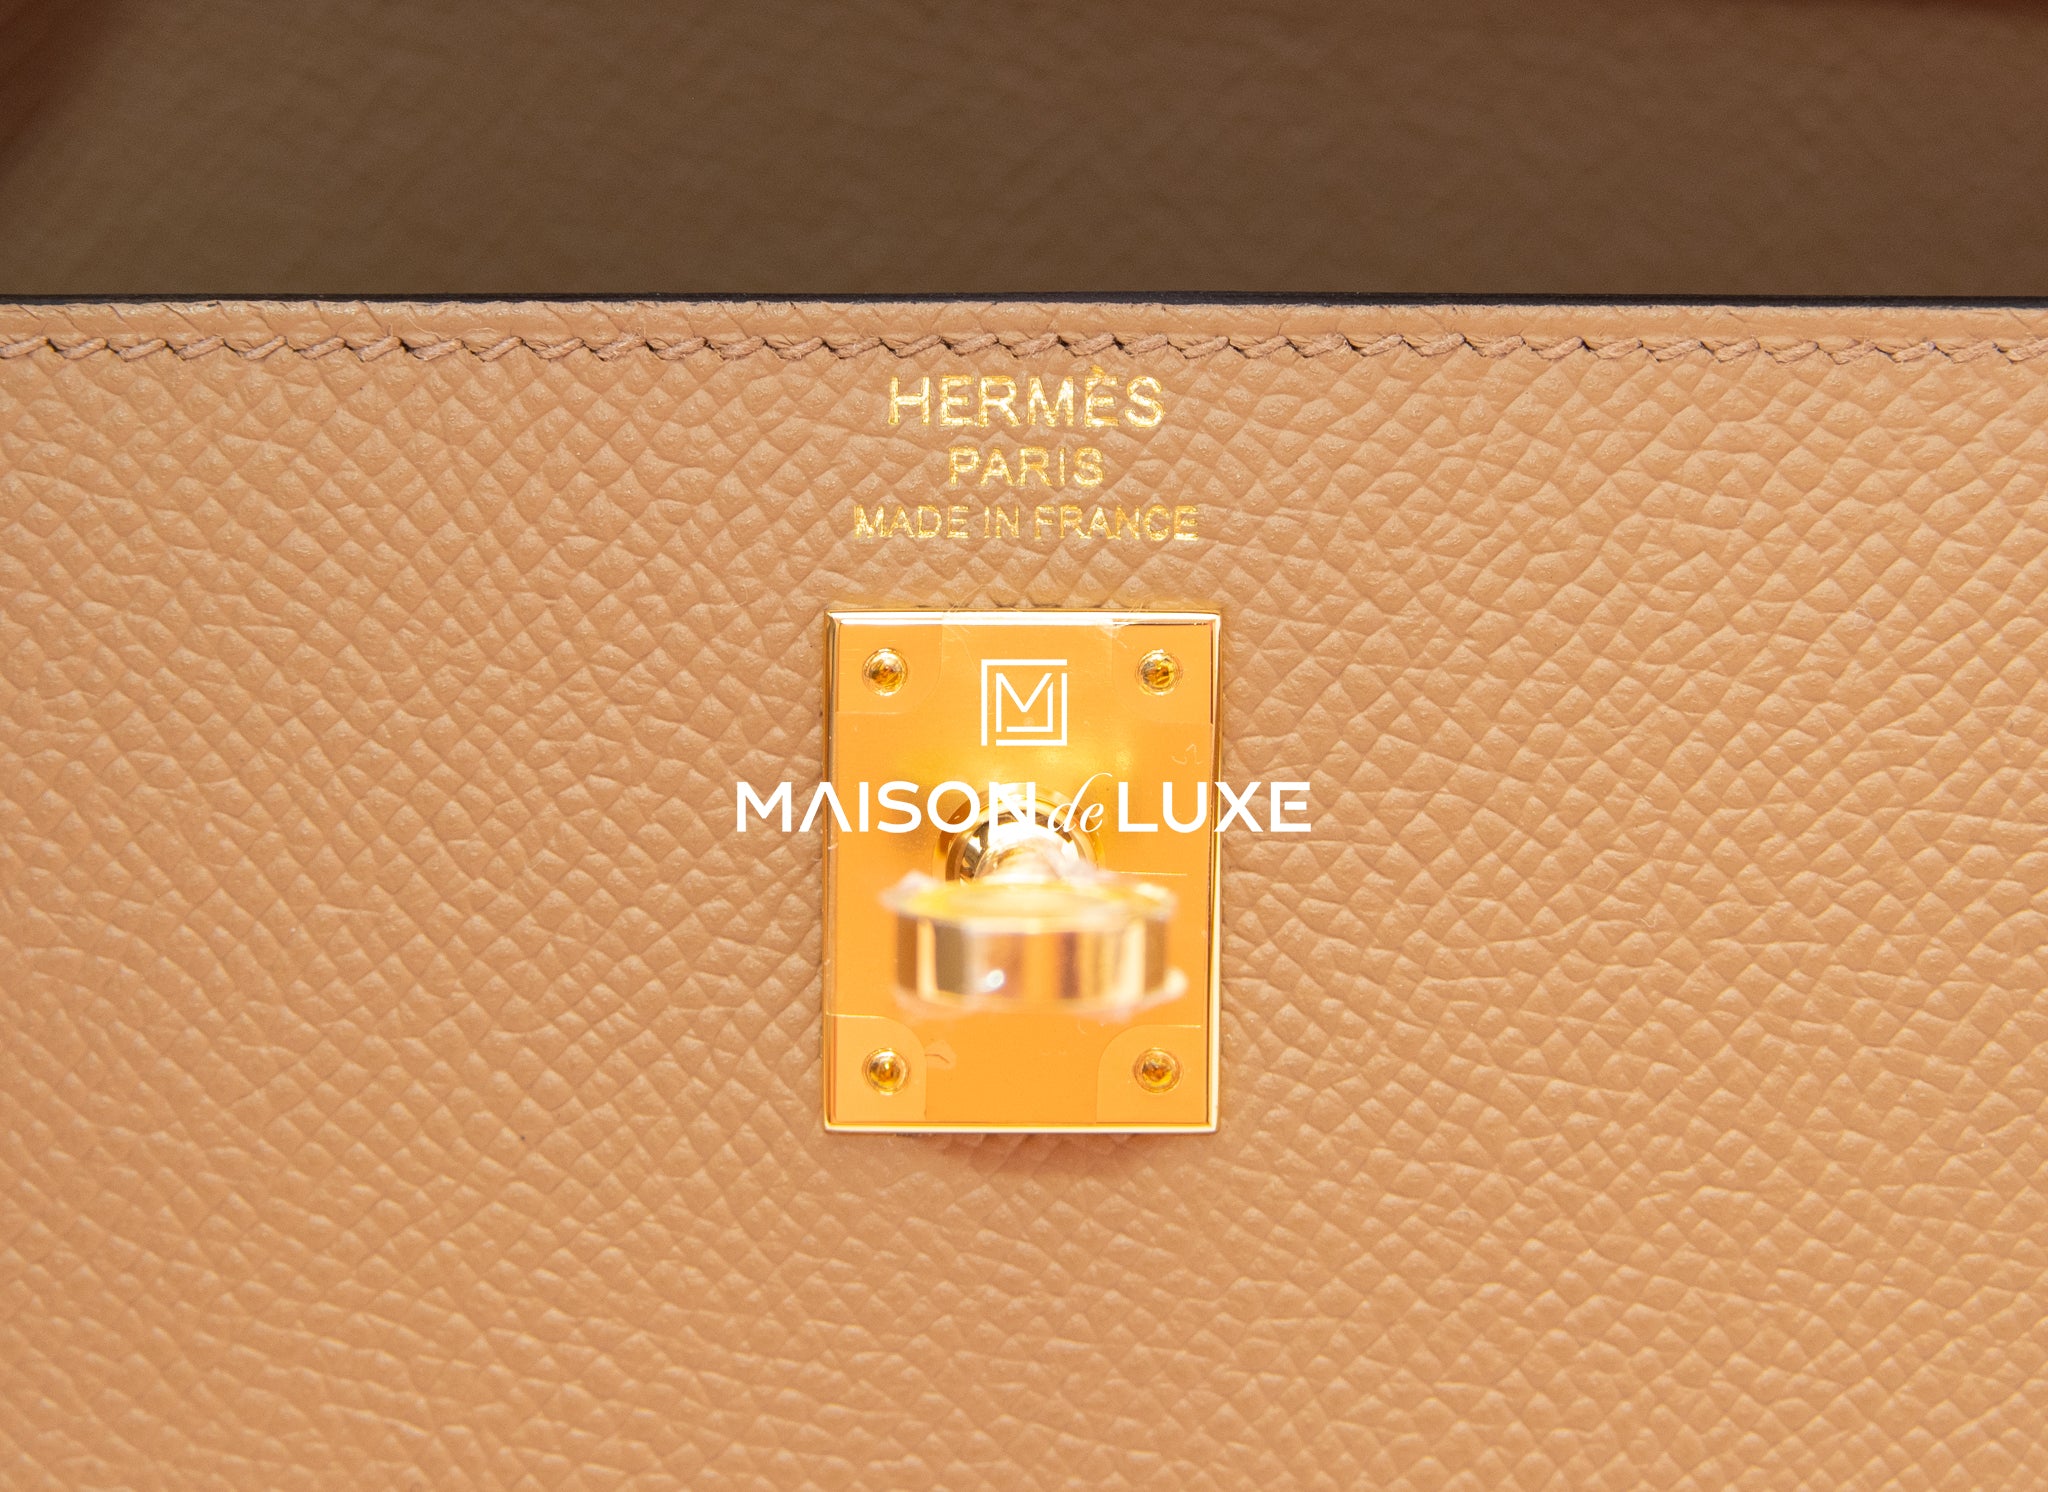 Hermes Kelly Sellier 25 Chai 0M Epsom Handbag Gold Hardware